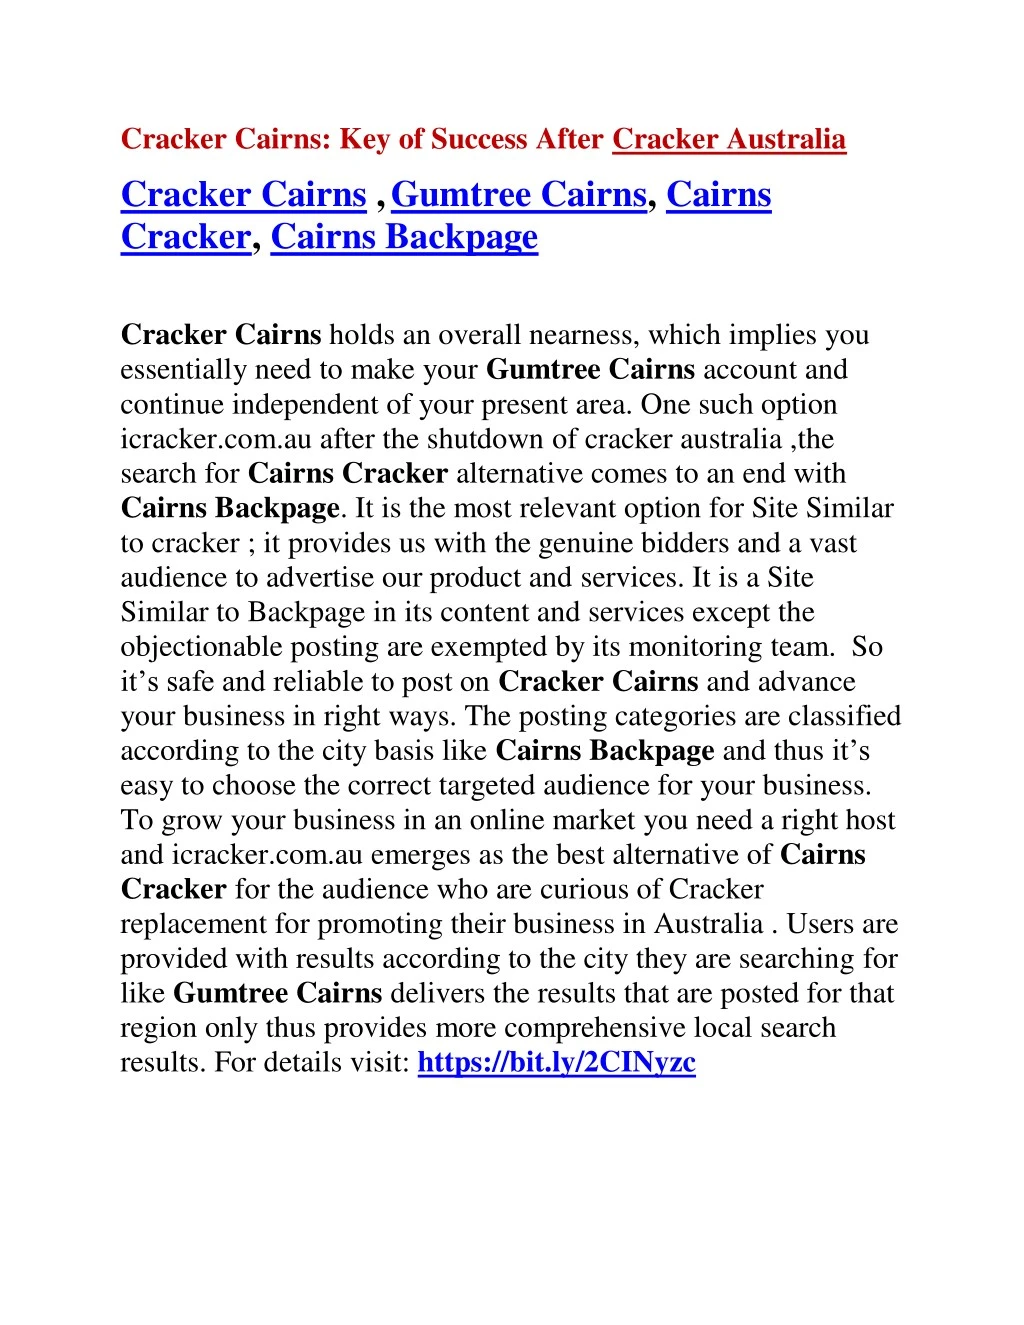 cracker cairns key of success after cracker n.